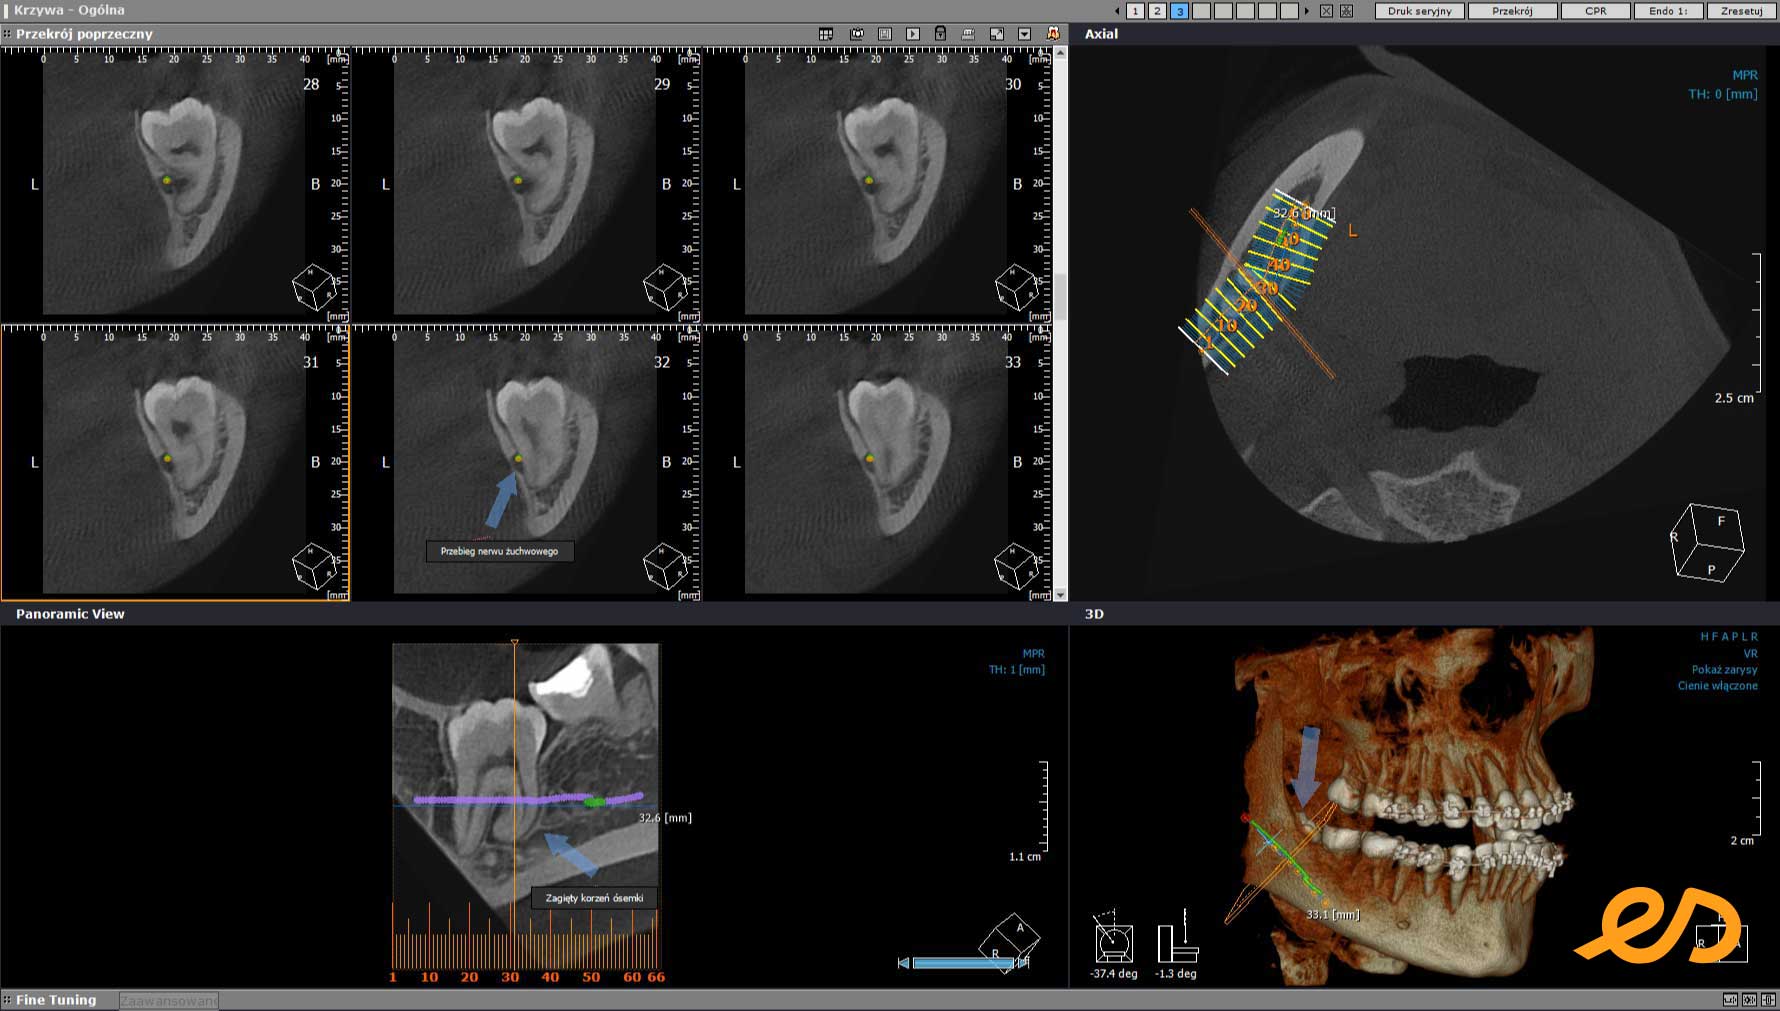 Zrzut ekranu programu do przeglądania zdjęć tomograficznych pokazujący kanał żuchwowy przebiegający blisko zatrzymanego zęba